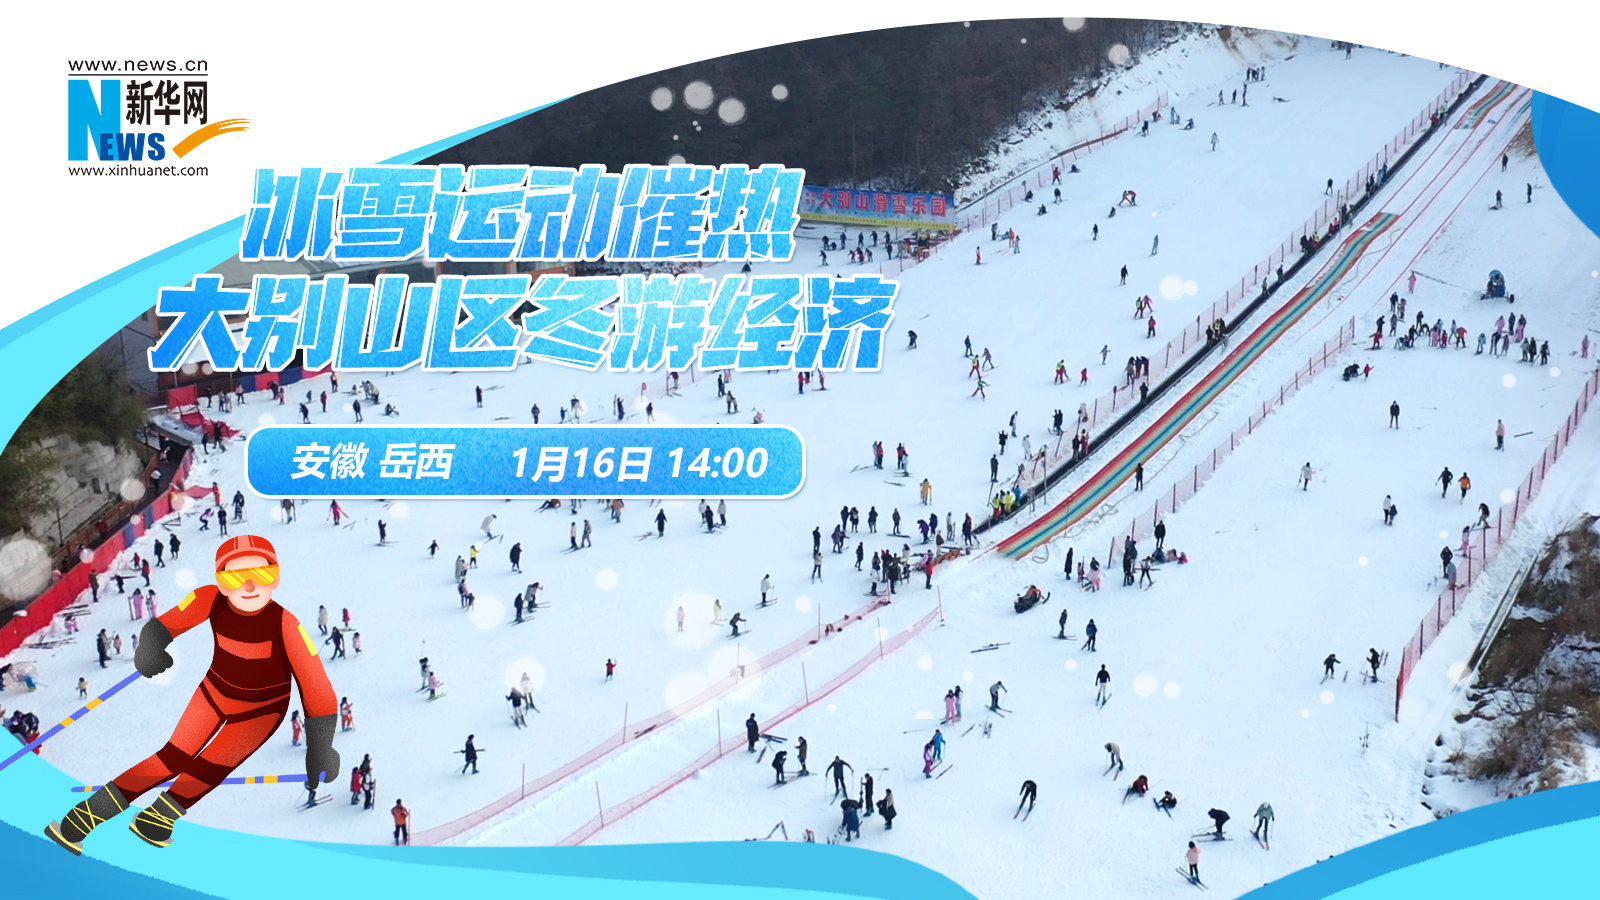 【新华云直播】冰雪运动催热大别山区冬游经济